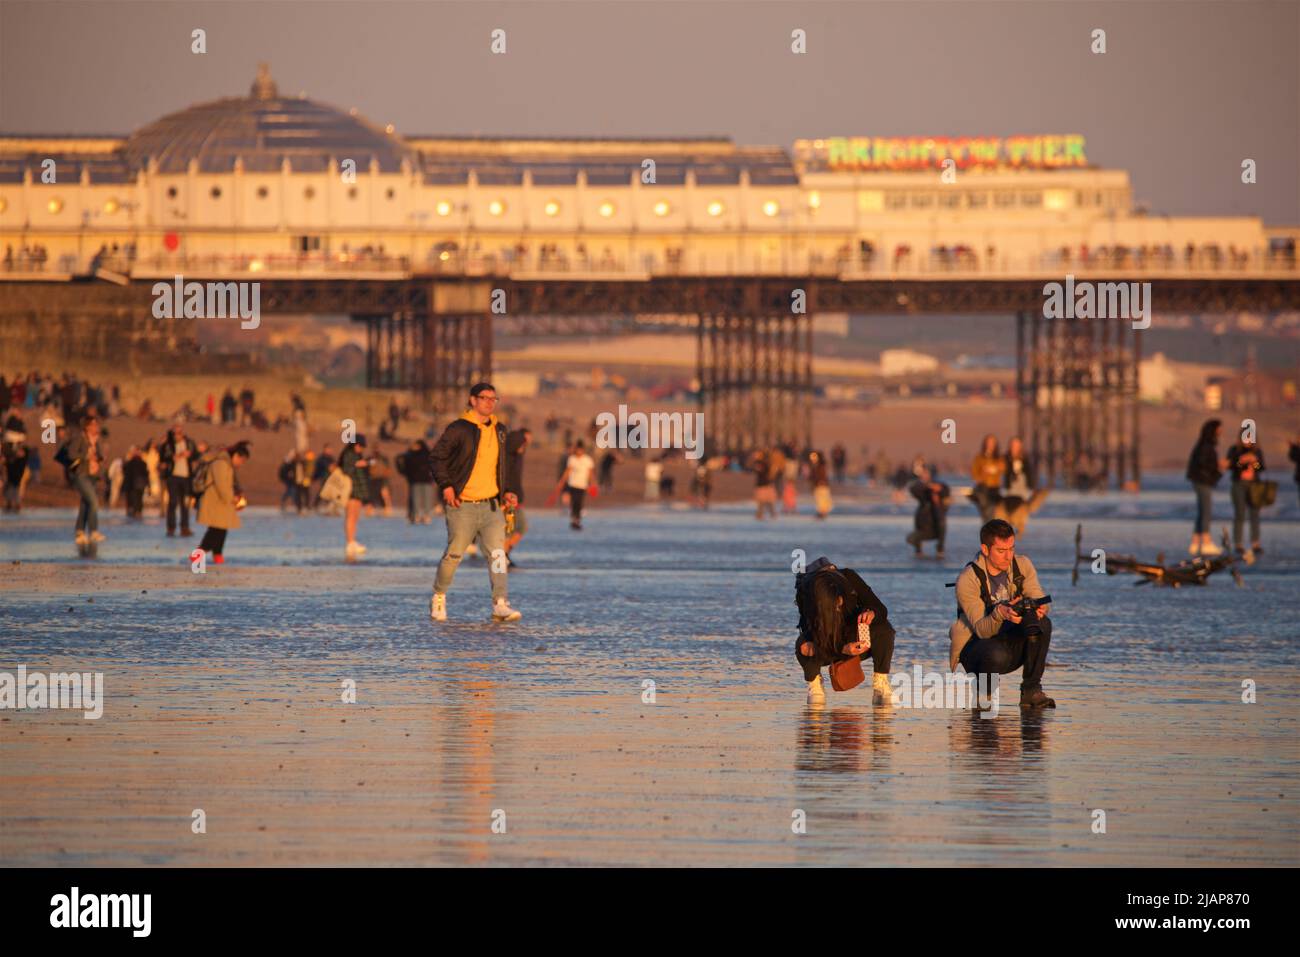 Silhoueted formes de personnes sur la plage à marée basse, Brighton & Hove, East Sussex, Angleterre, Royaume-Uni. Brighton Palace Pier au-delà. Banque D'Images